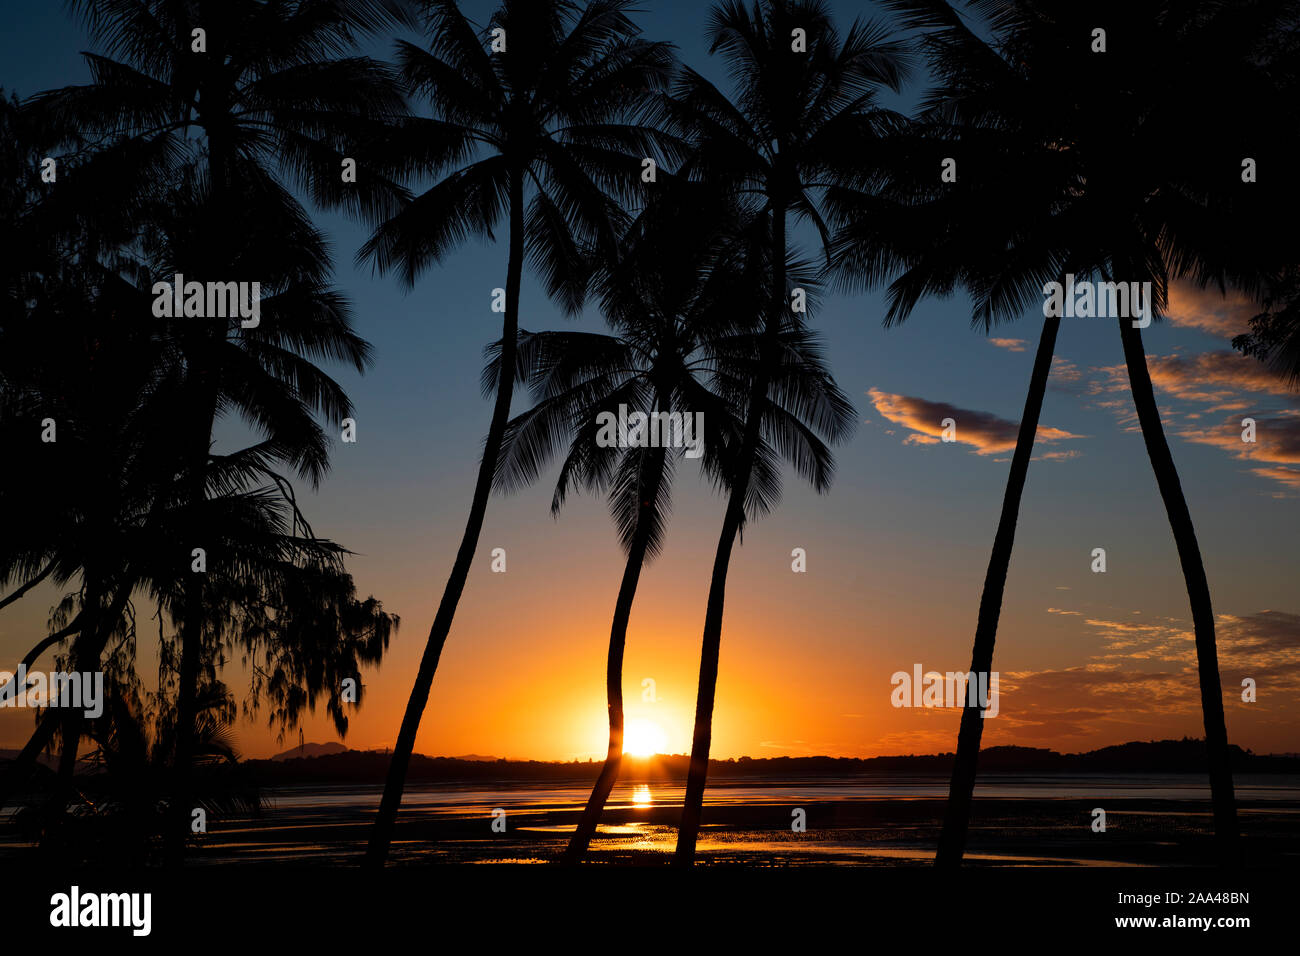 Palmiers sur la plage au coucher de soleil, Queensland, Australie Banque D'Images